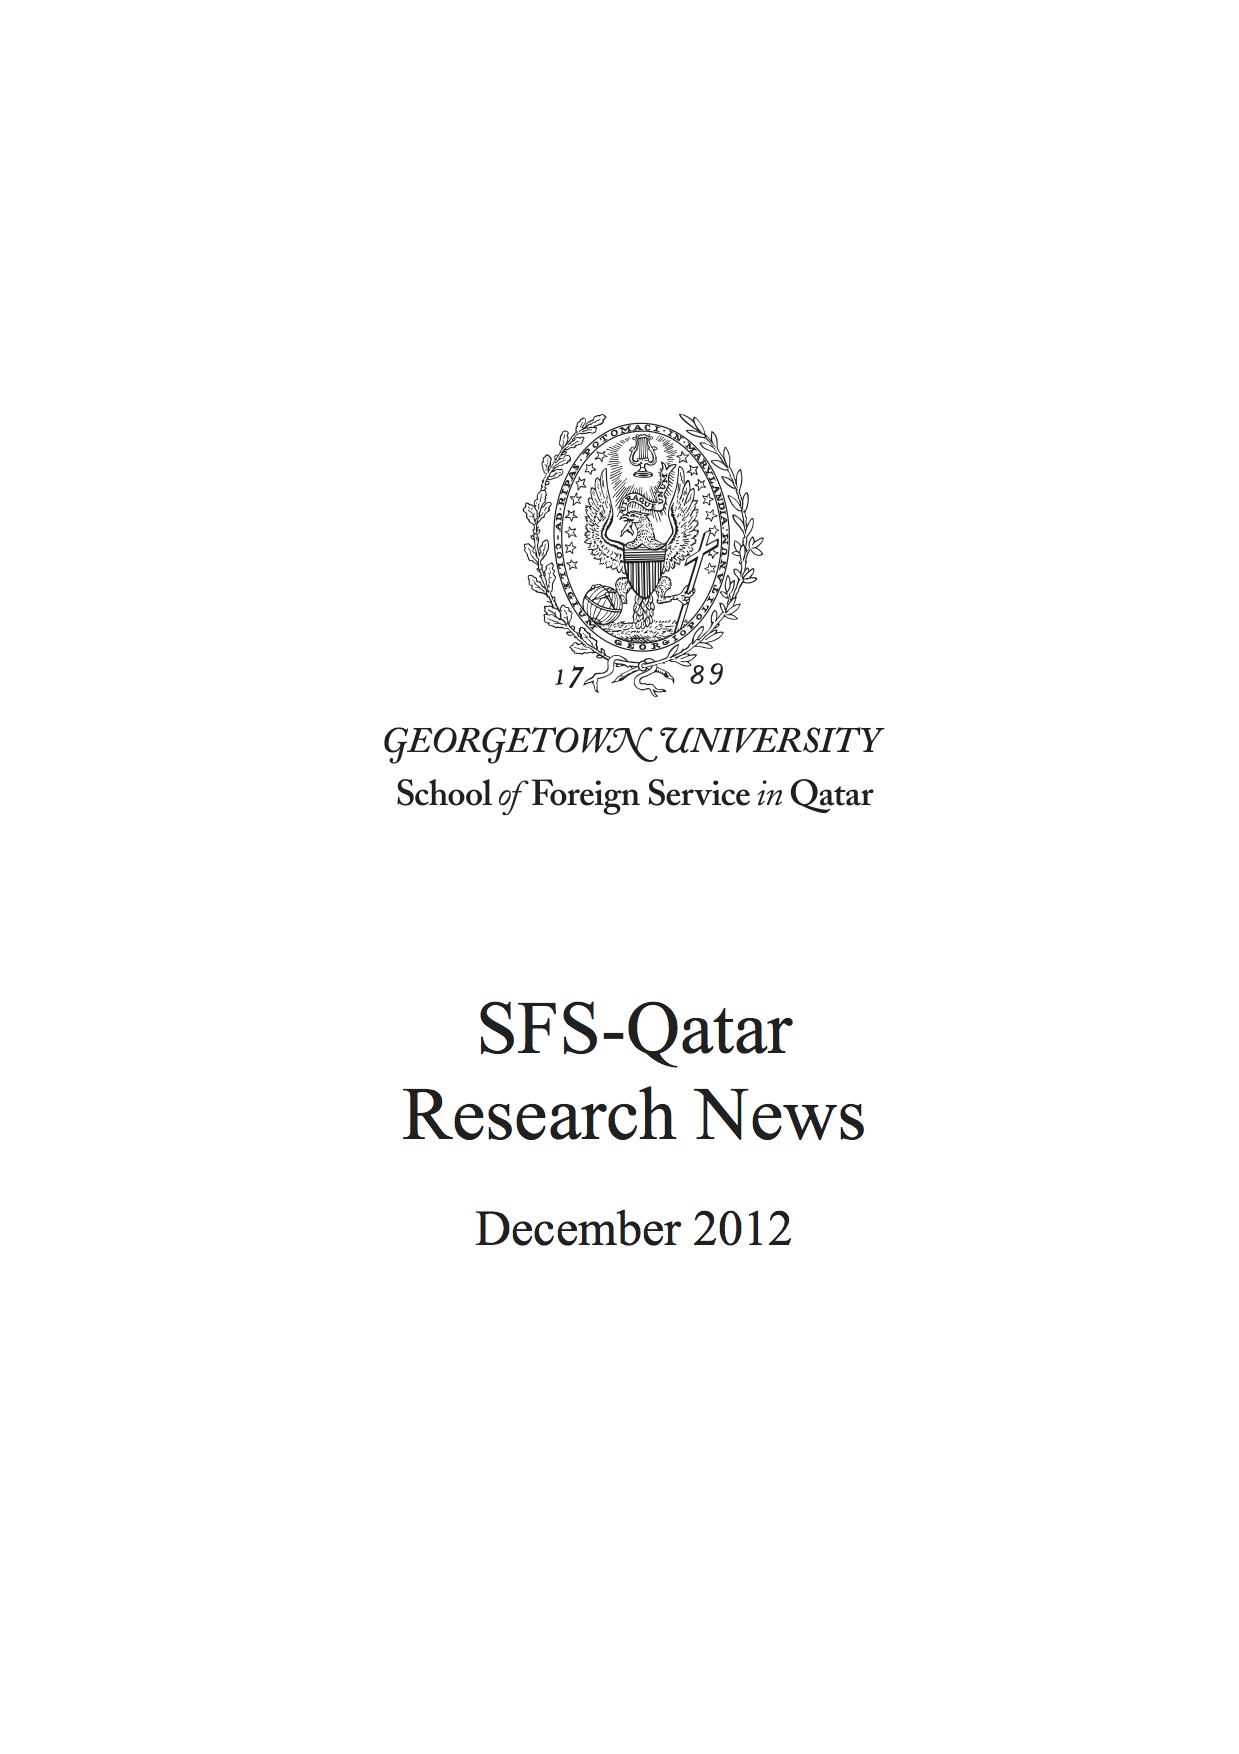 SFS-Qatar Research News Dec 2012